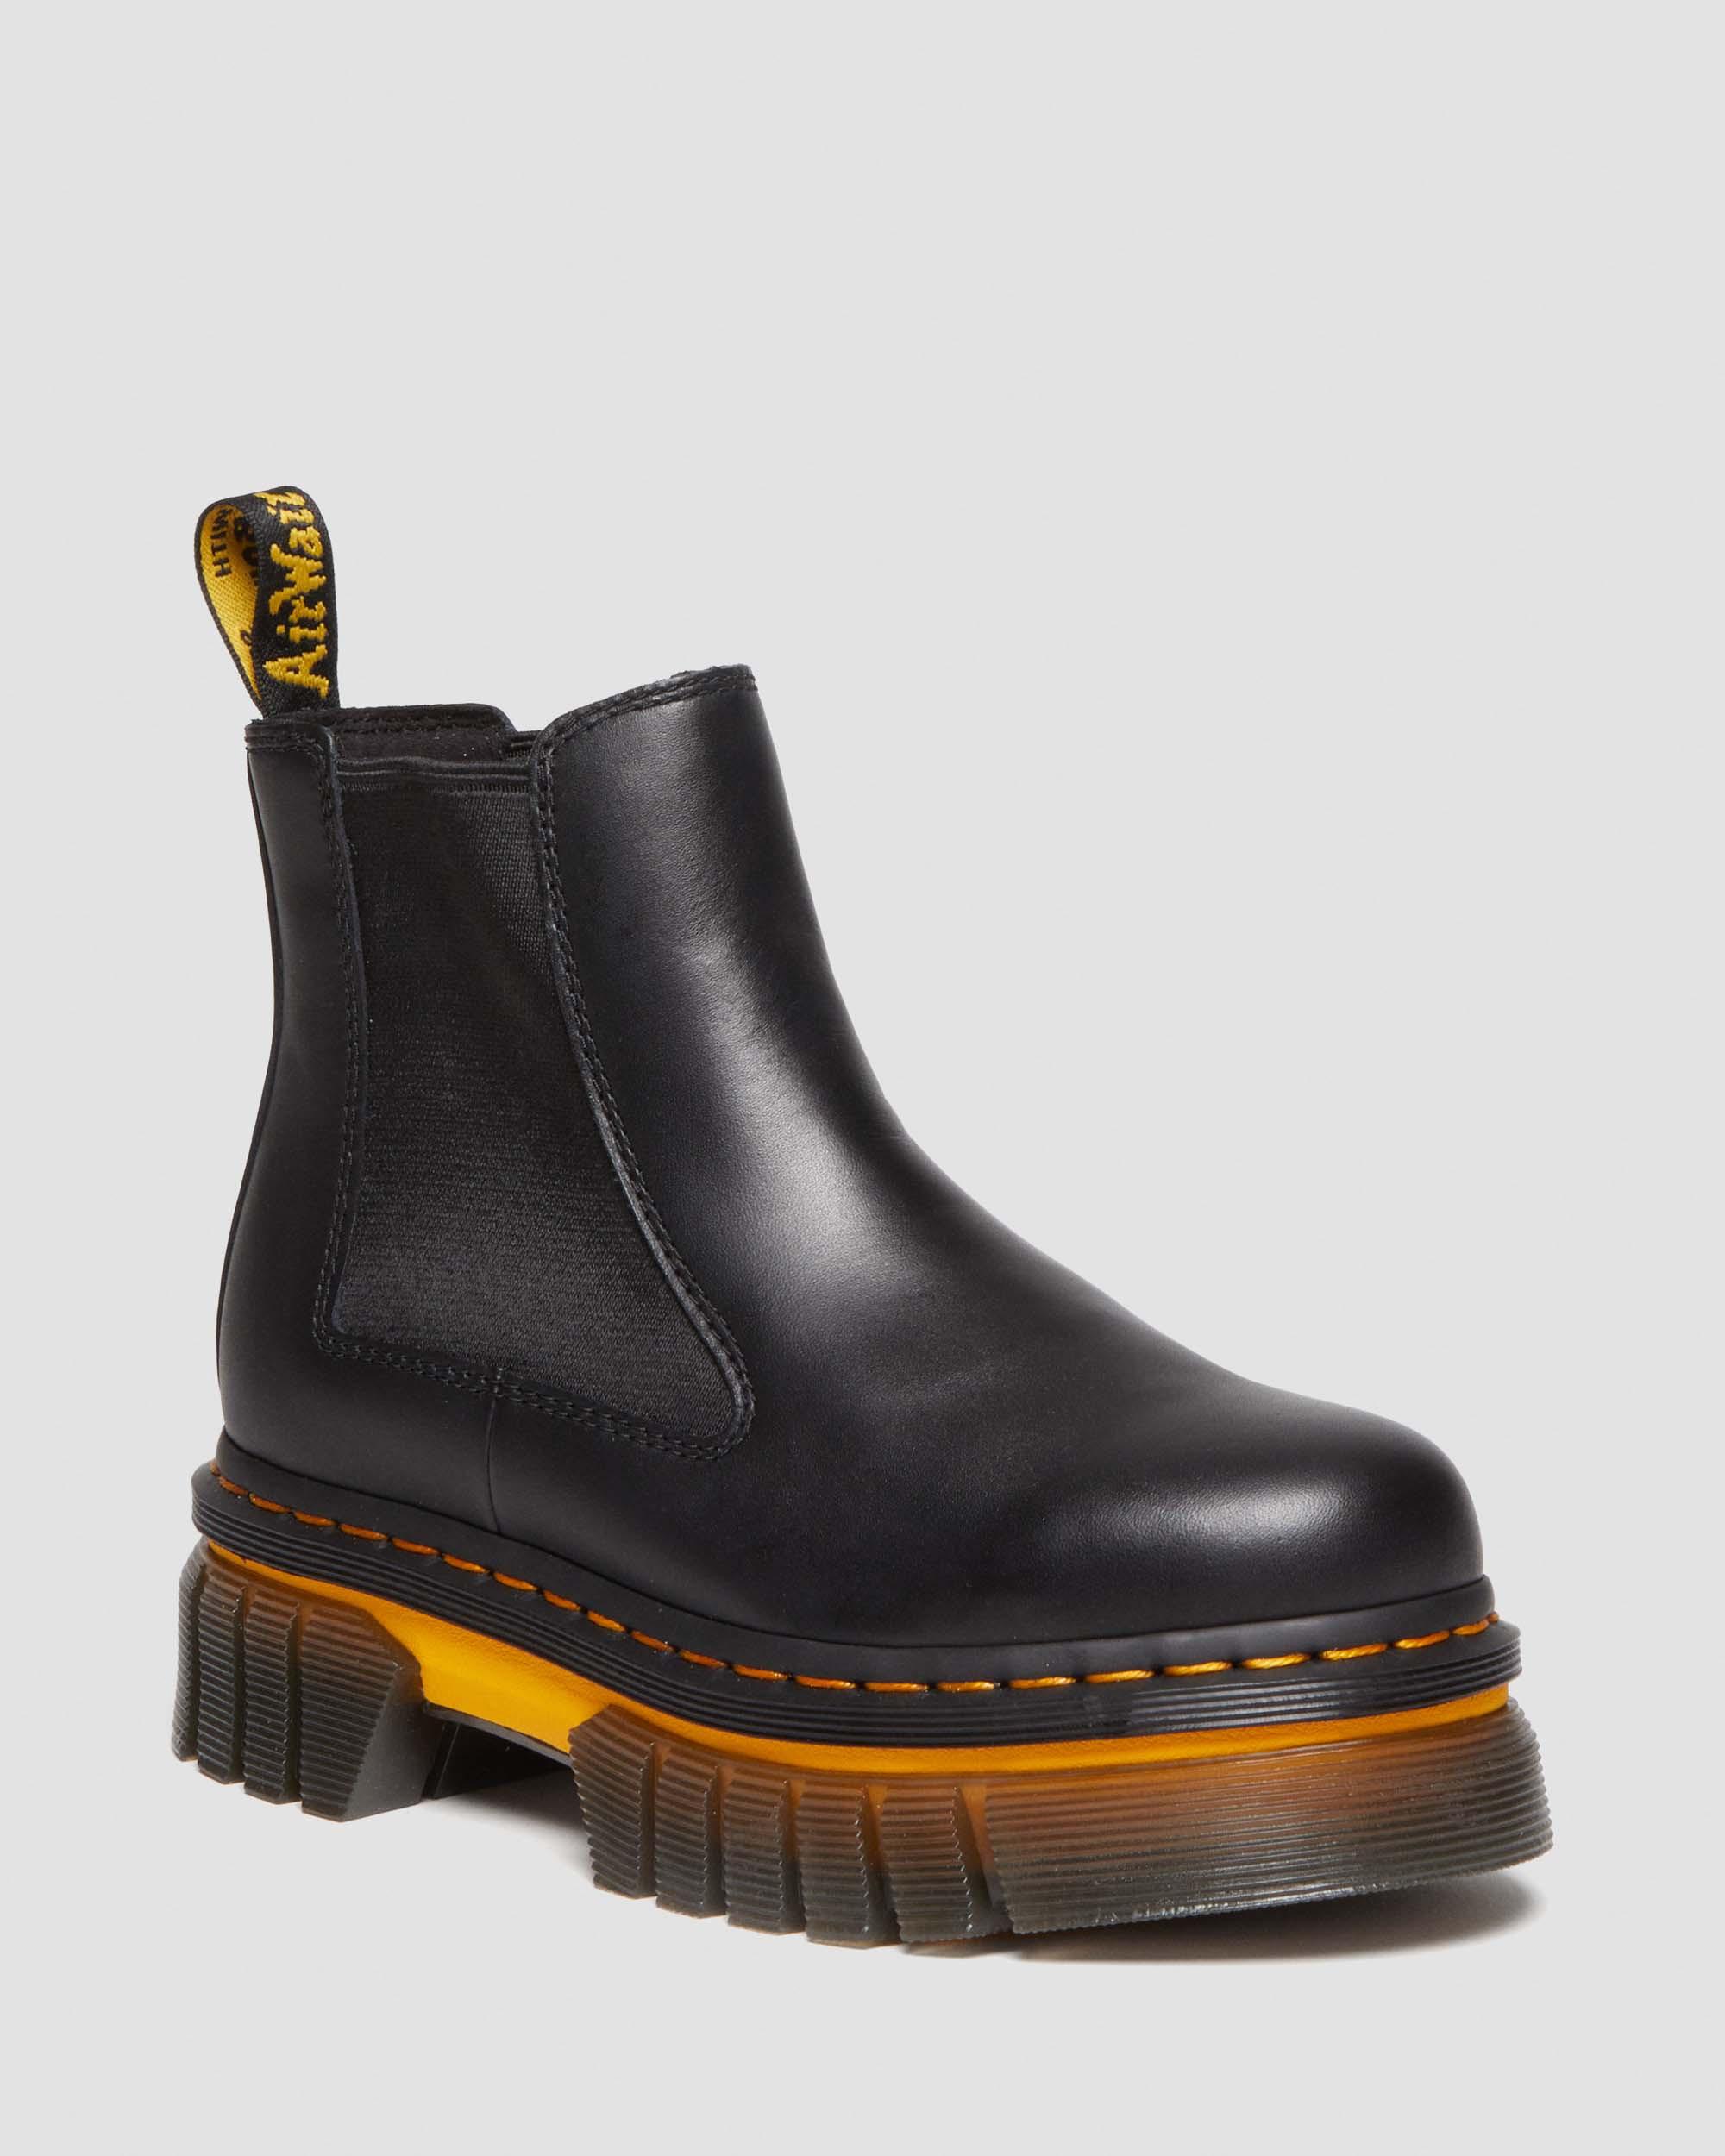 Audrick Contrast Sole Leather Platform Chelsea Boots, Black | Dr. Martens